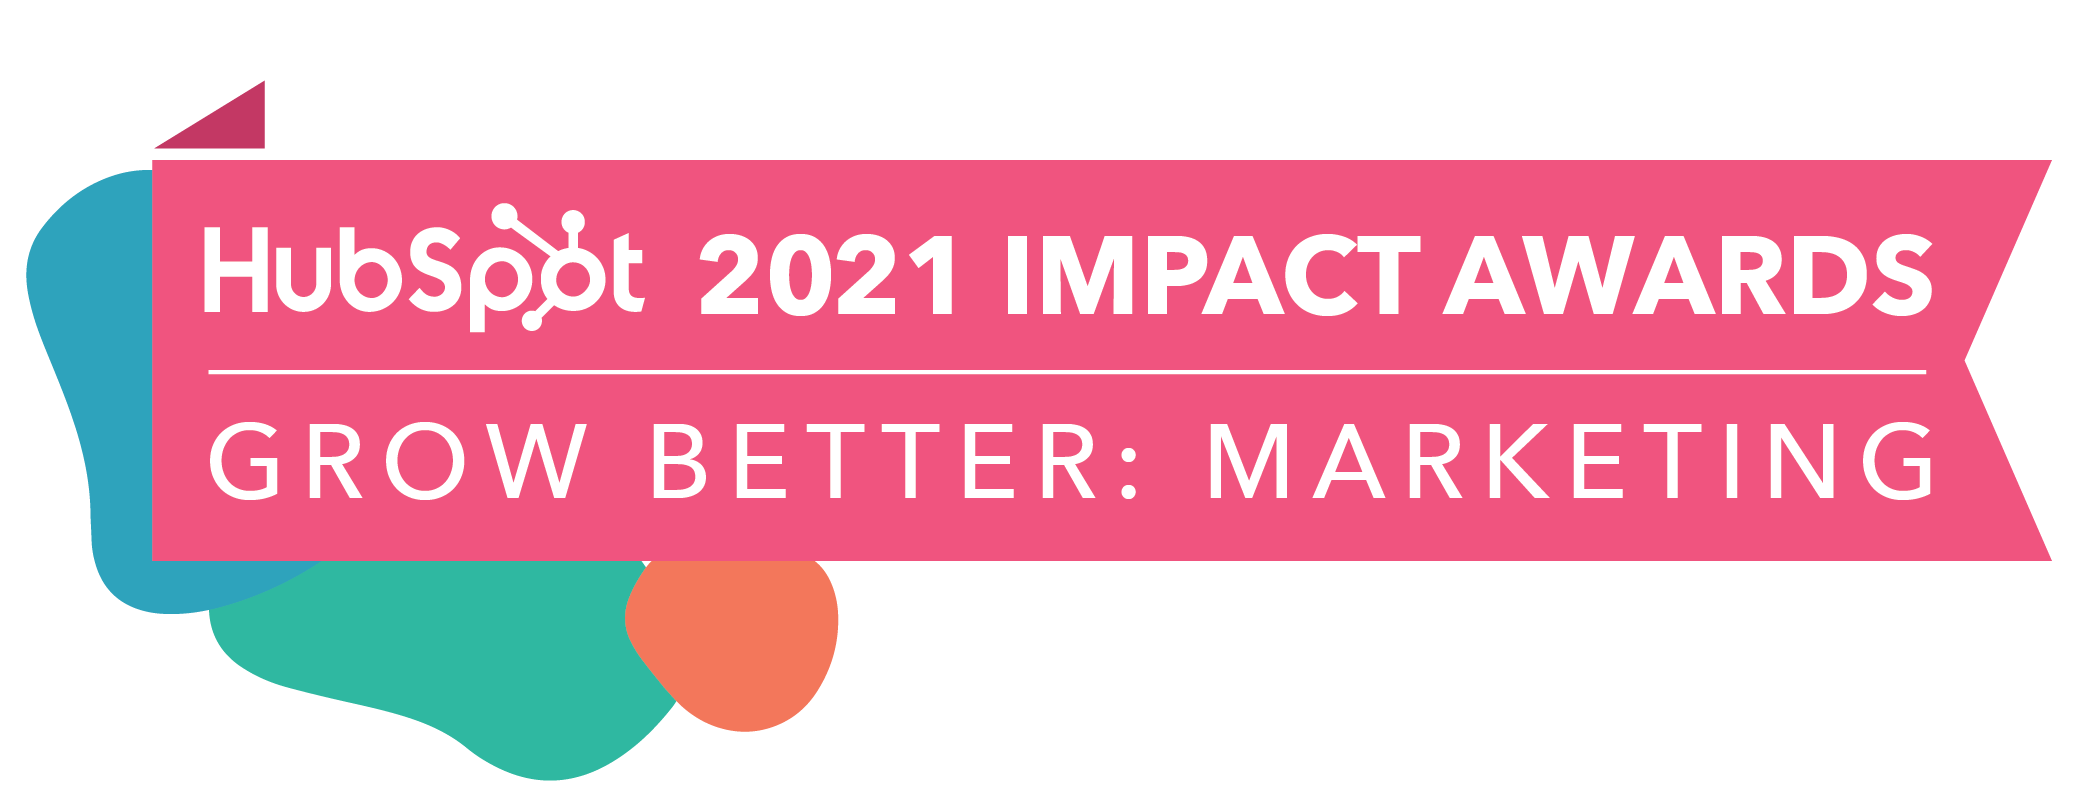 HubSpot Impact Awards 2021